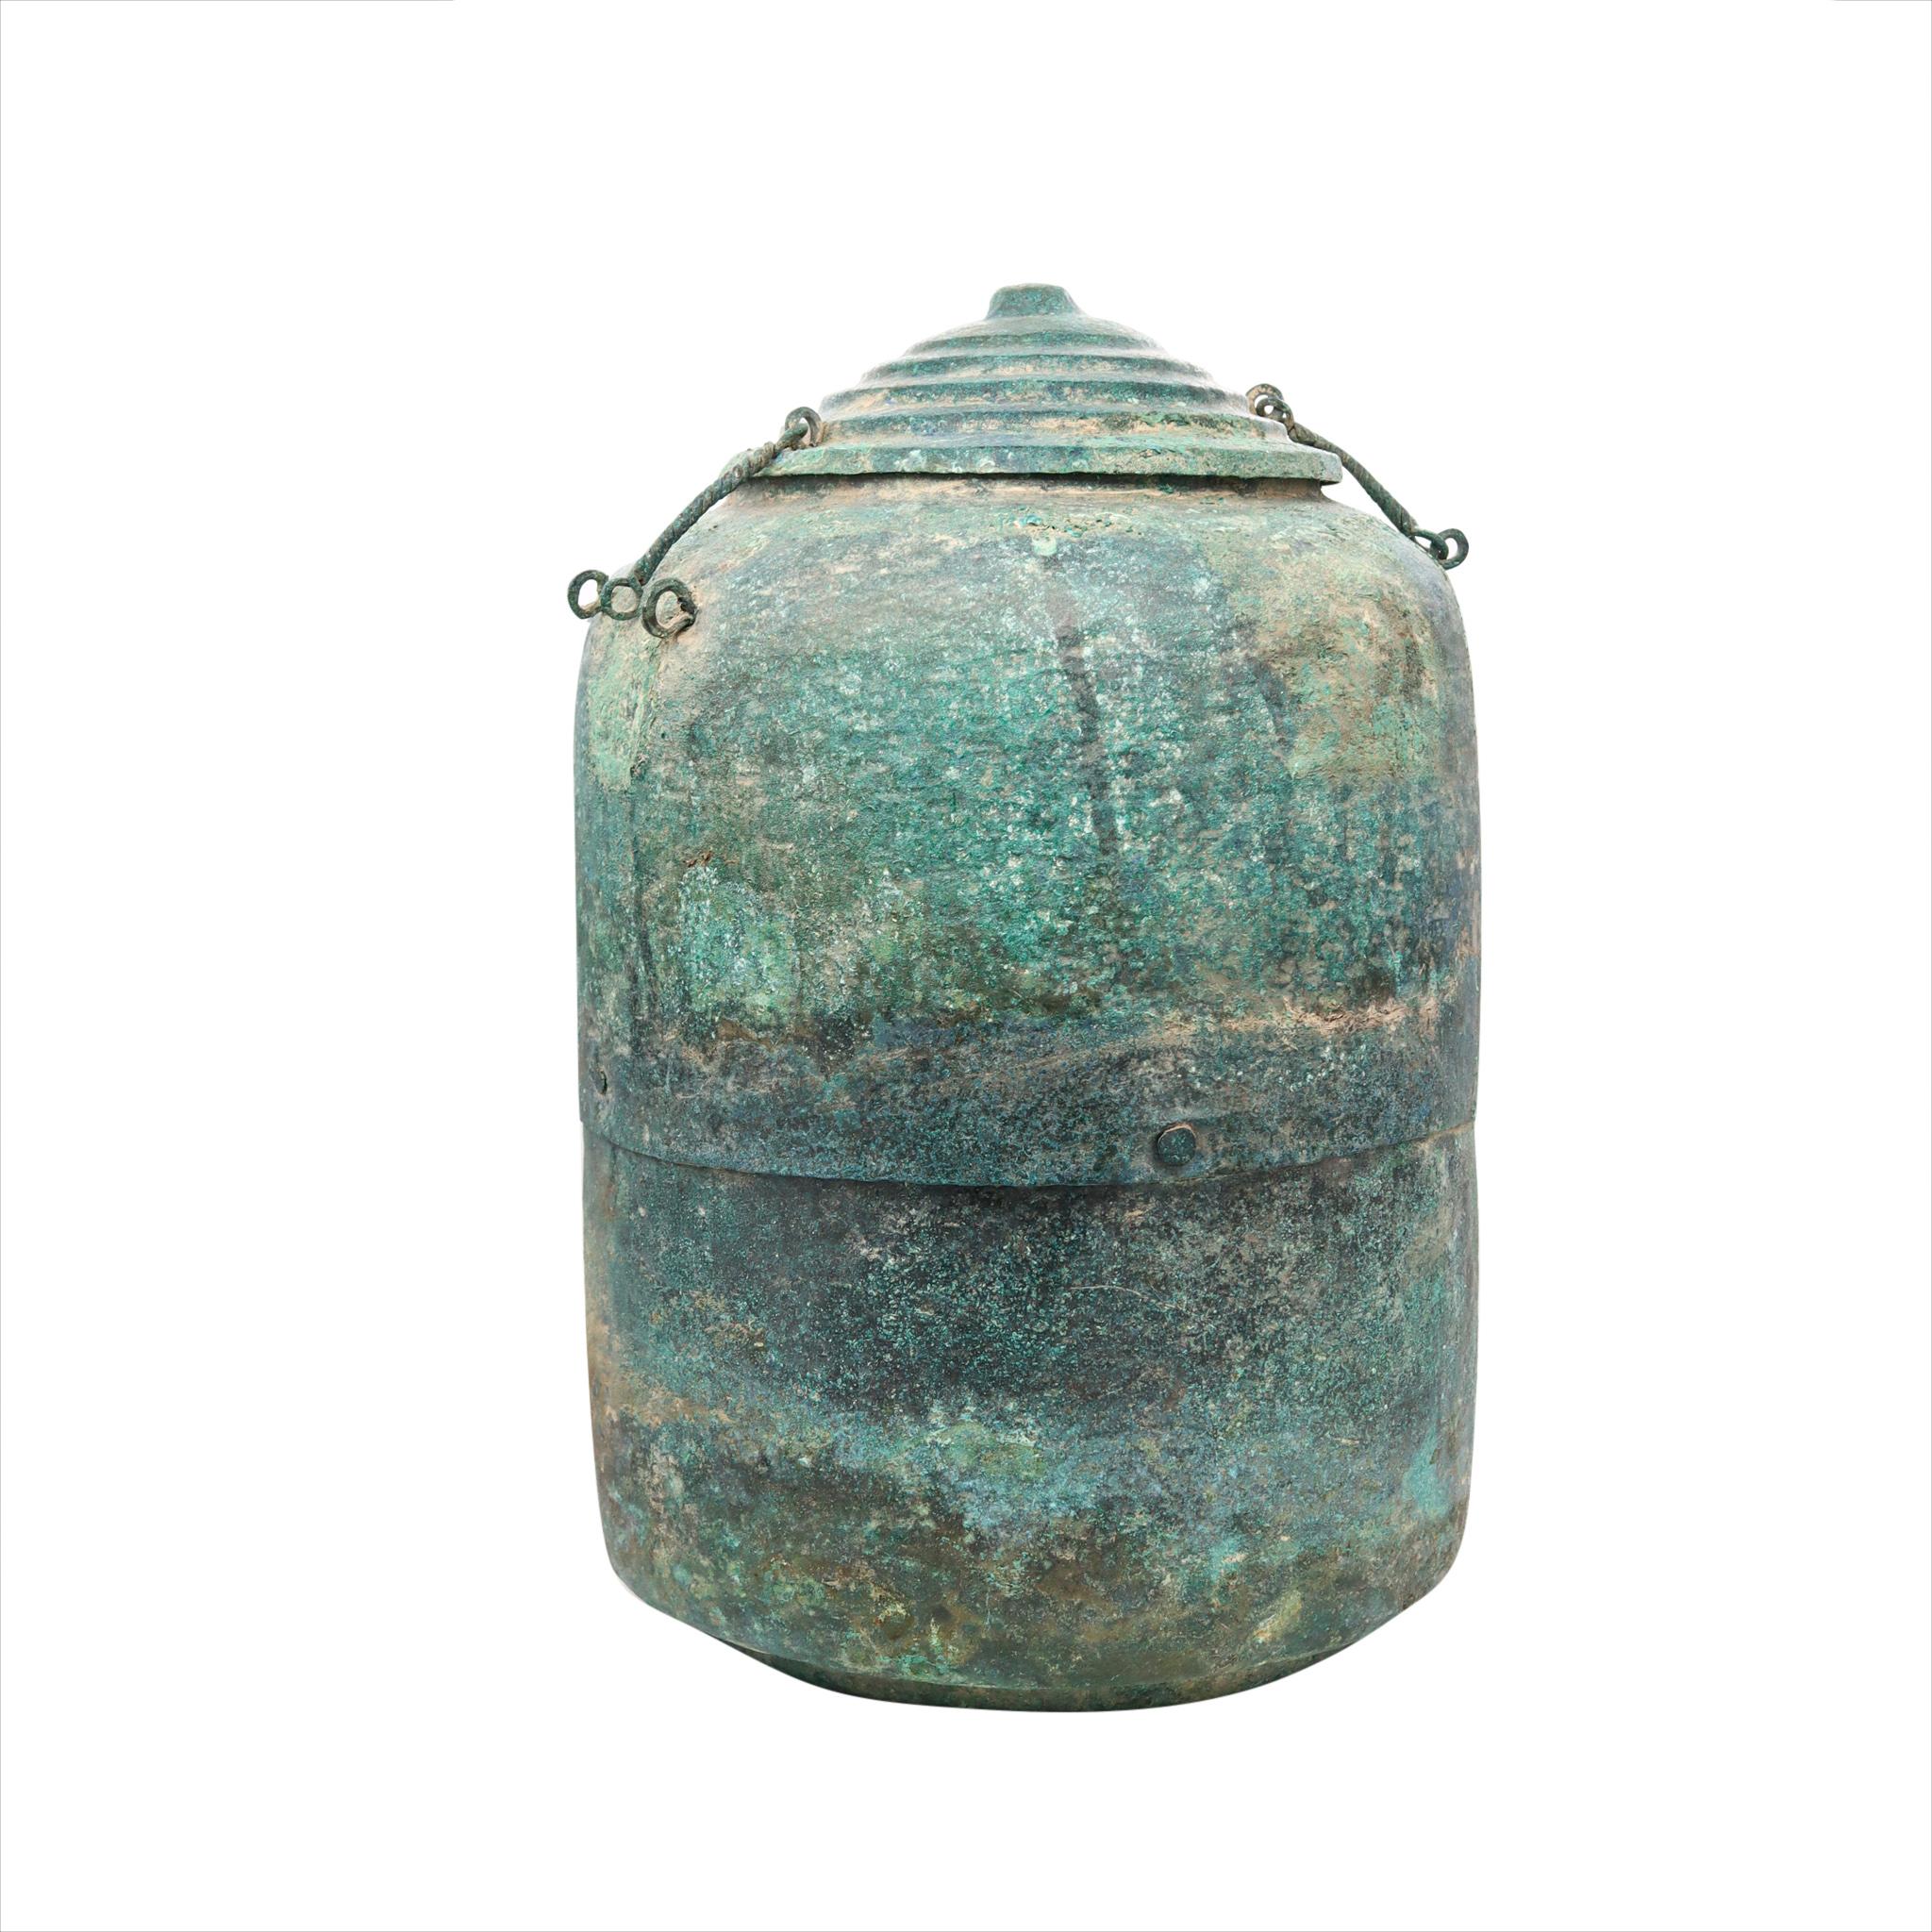 Vase à offrandes de la dynastie chinoise des Song (960/1279 ADS).

Un magnifique 